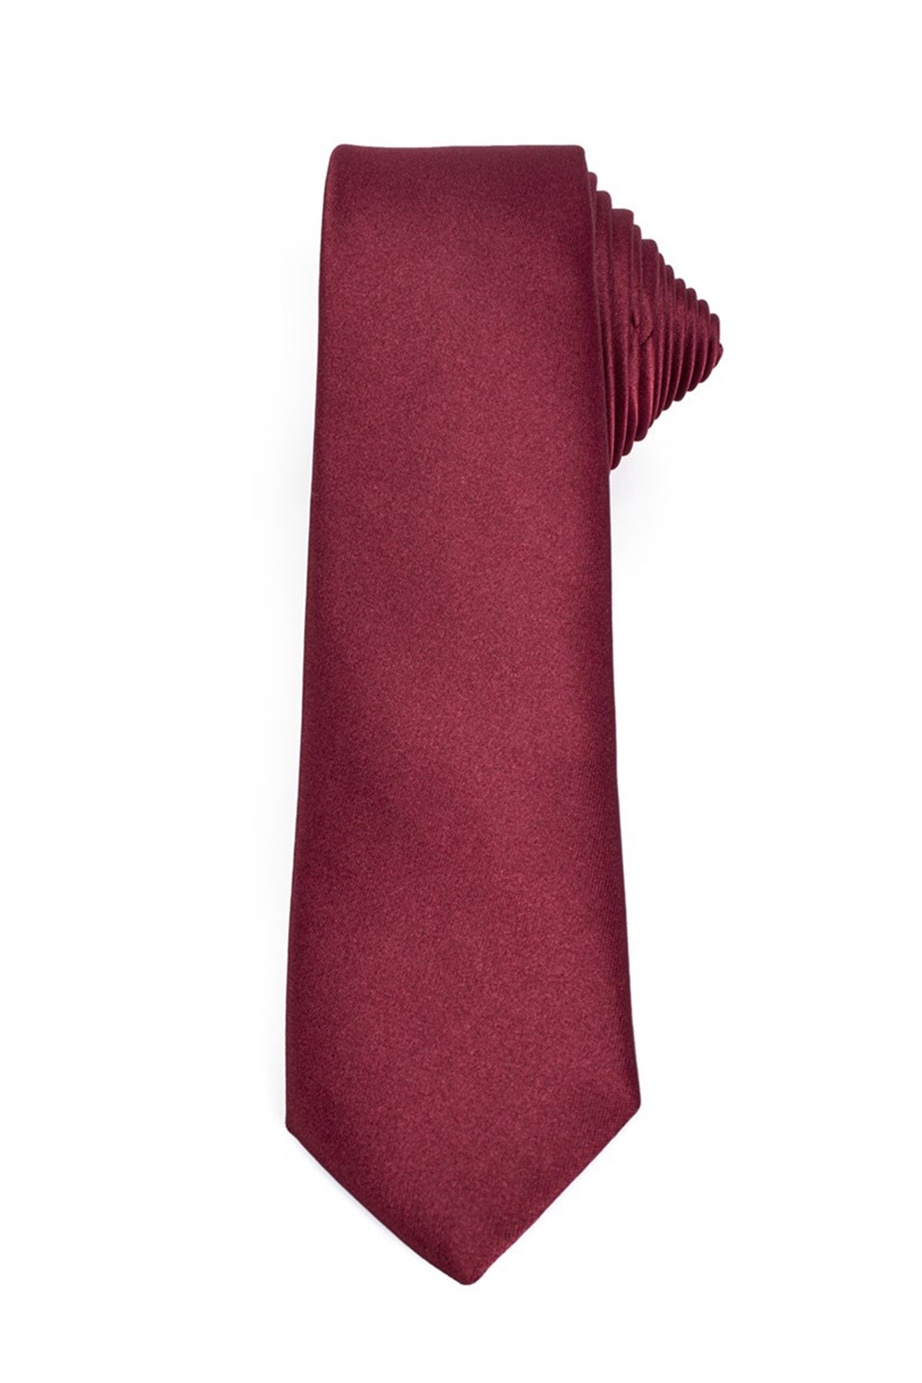 Bordó színű vékony nyakkendő